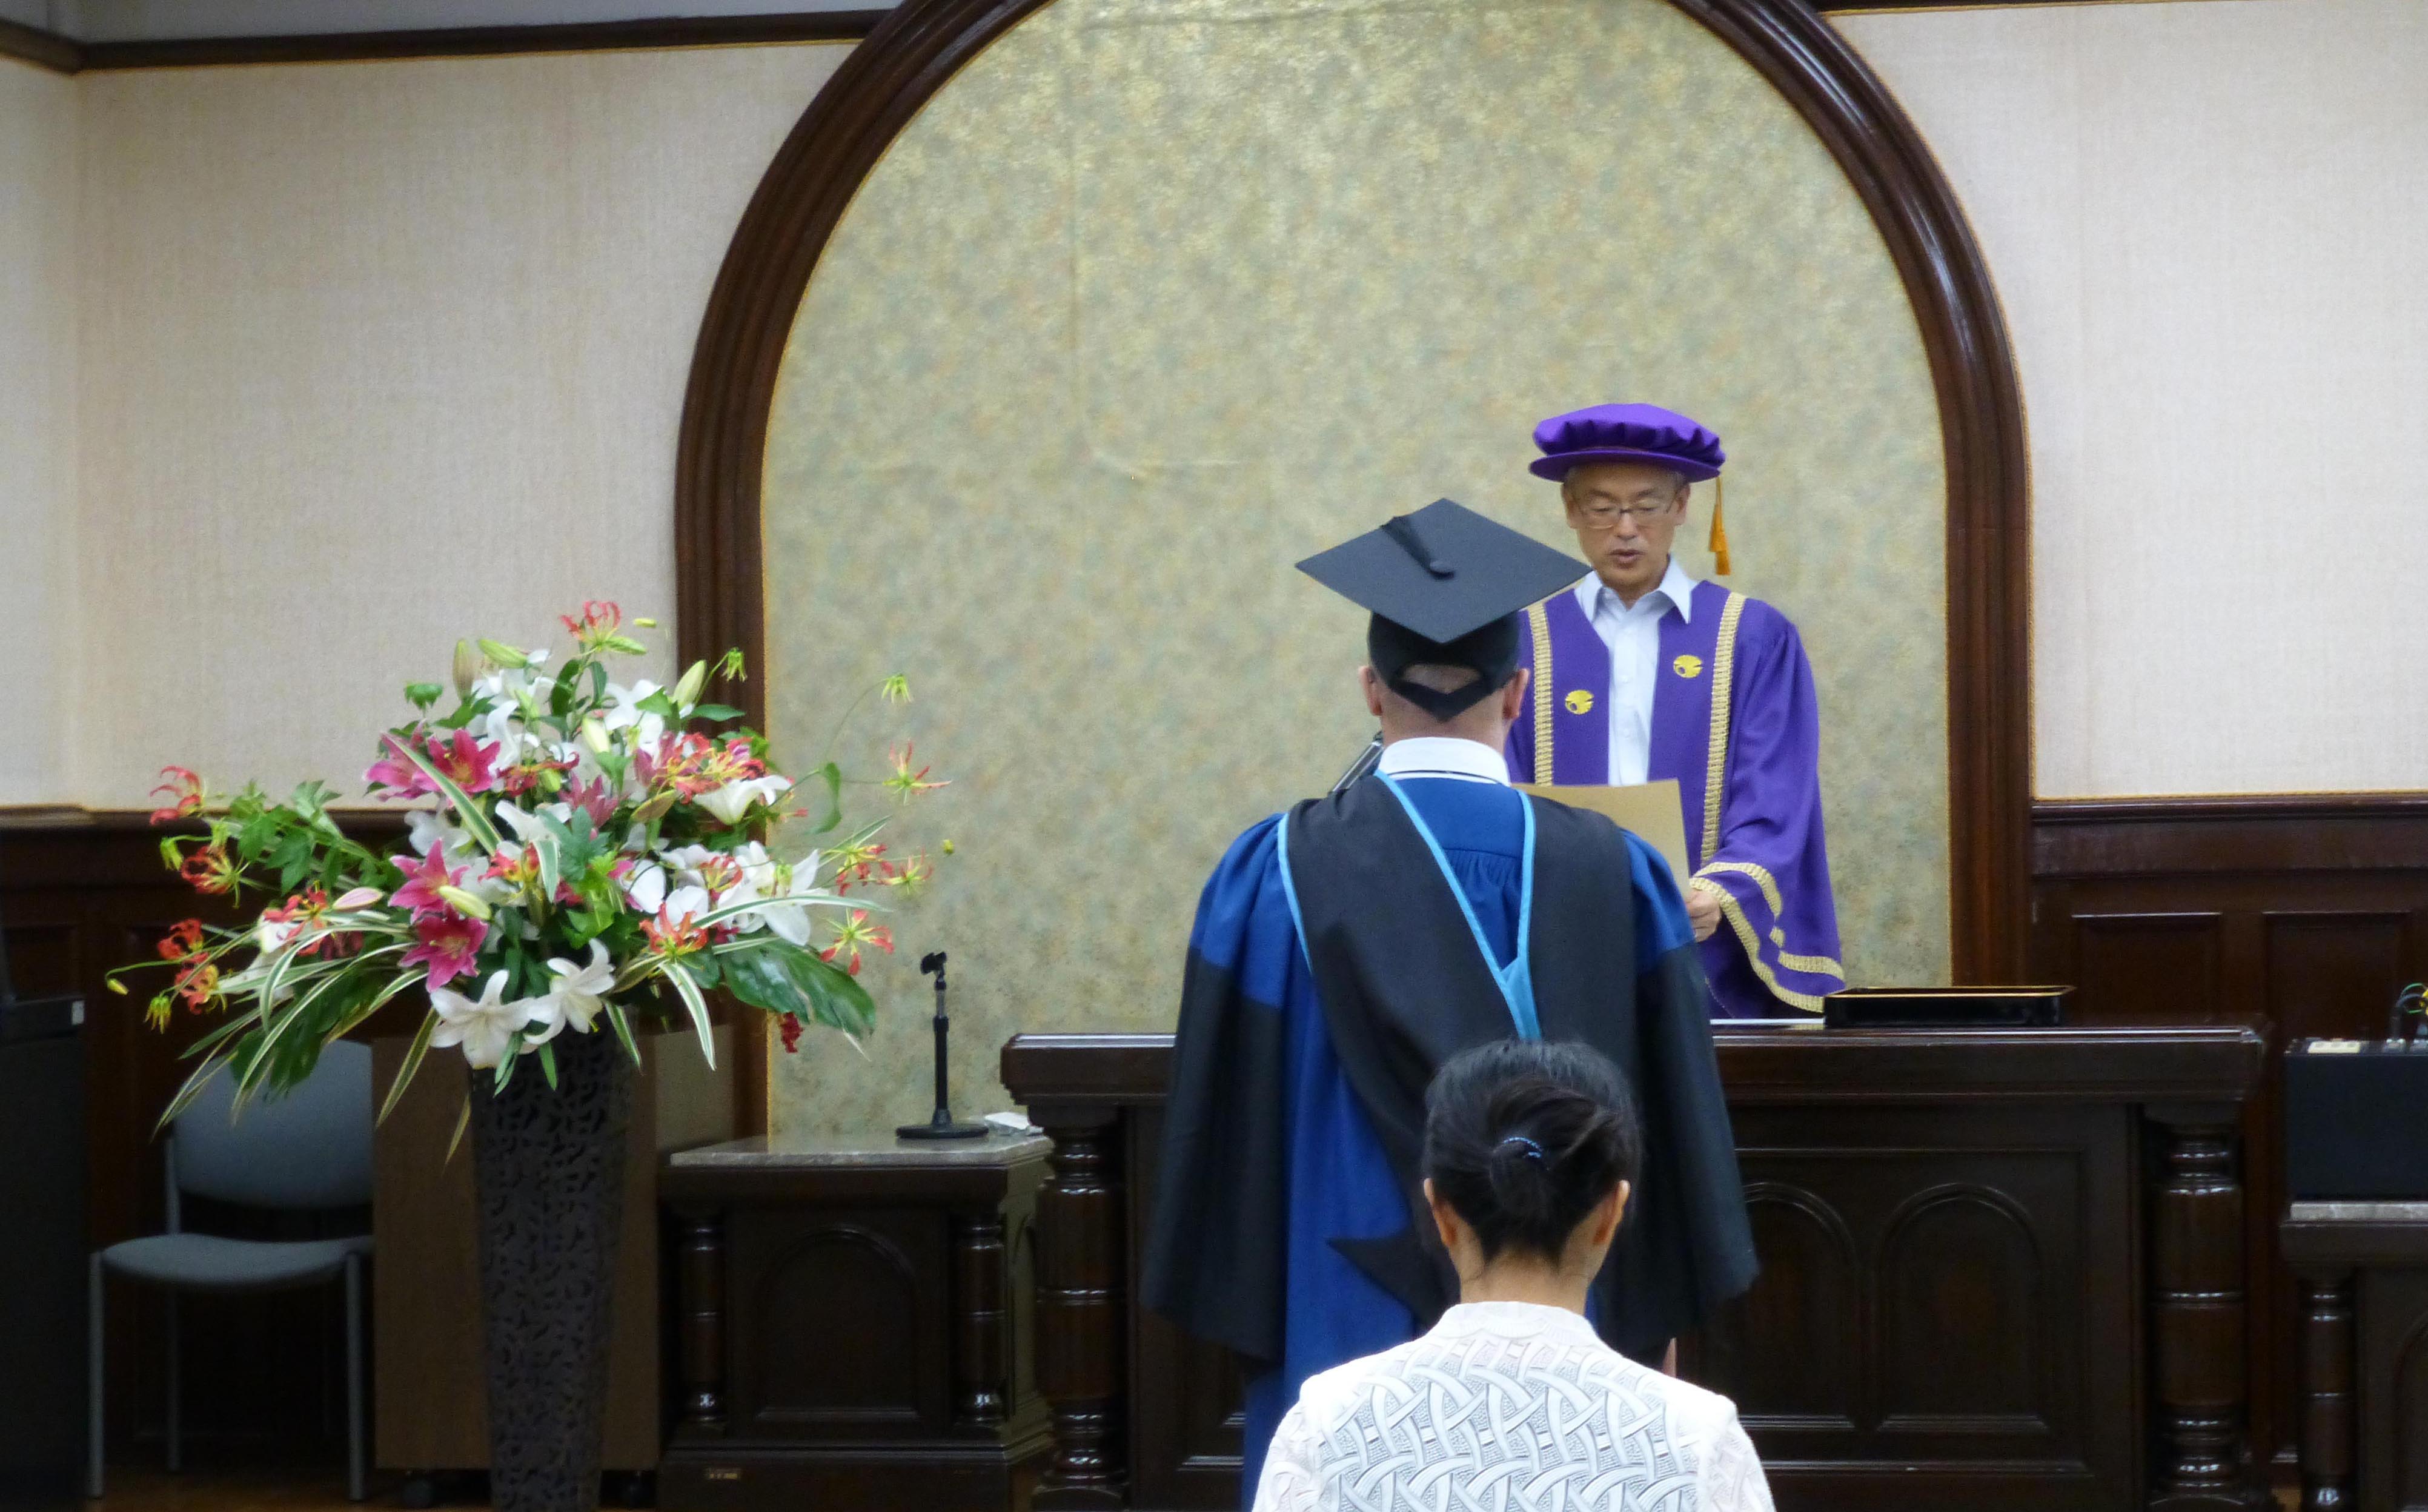 Director of Managing Committee Yasunobu NAKAMURA's congratulatory speech